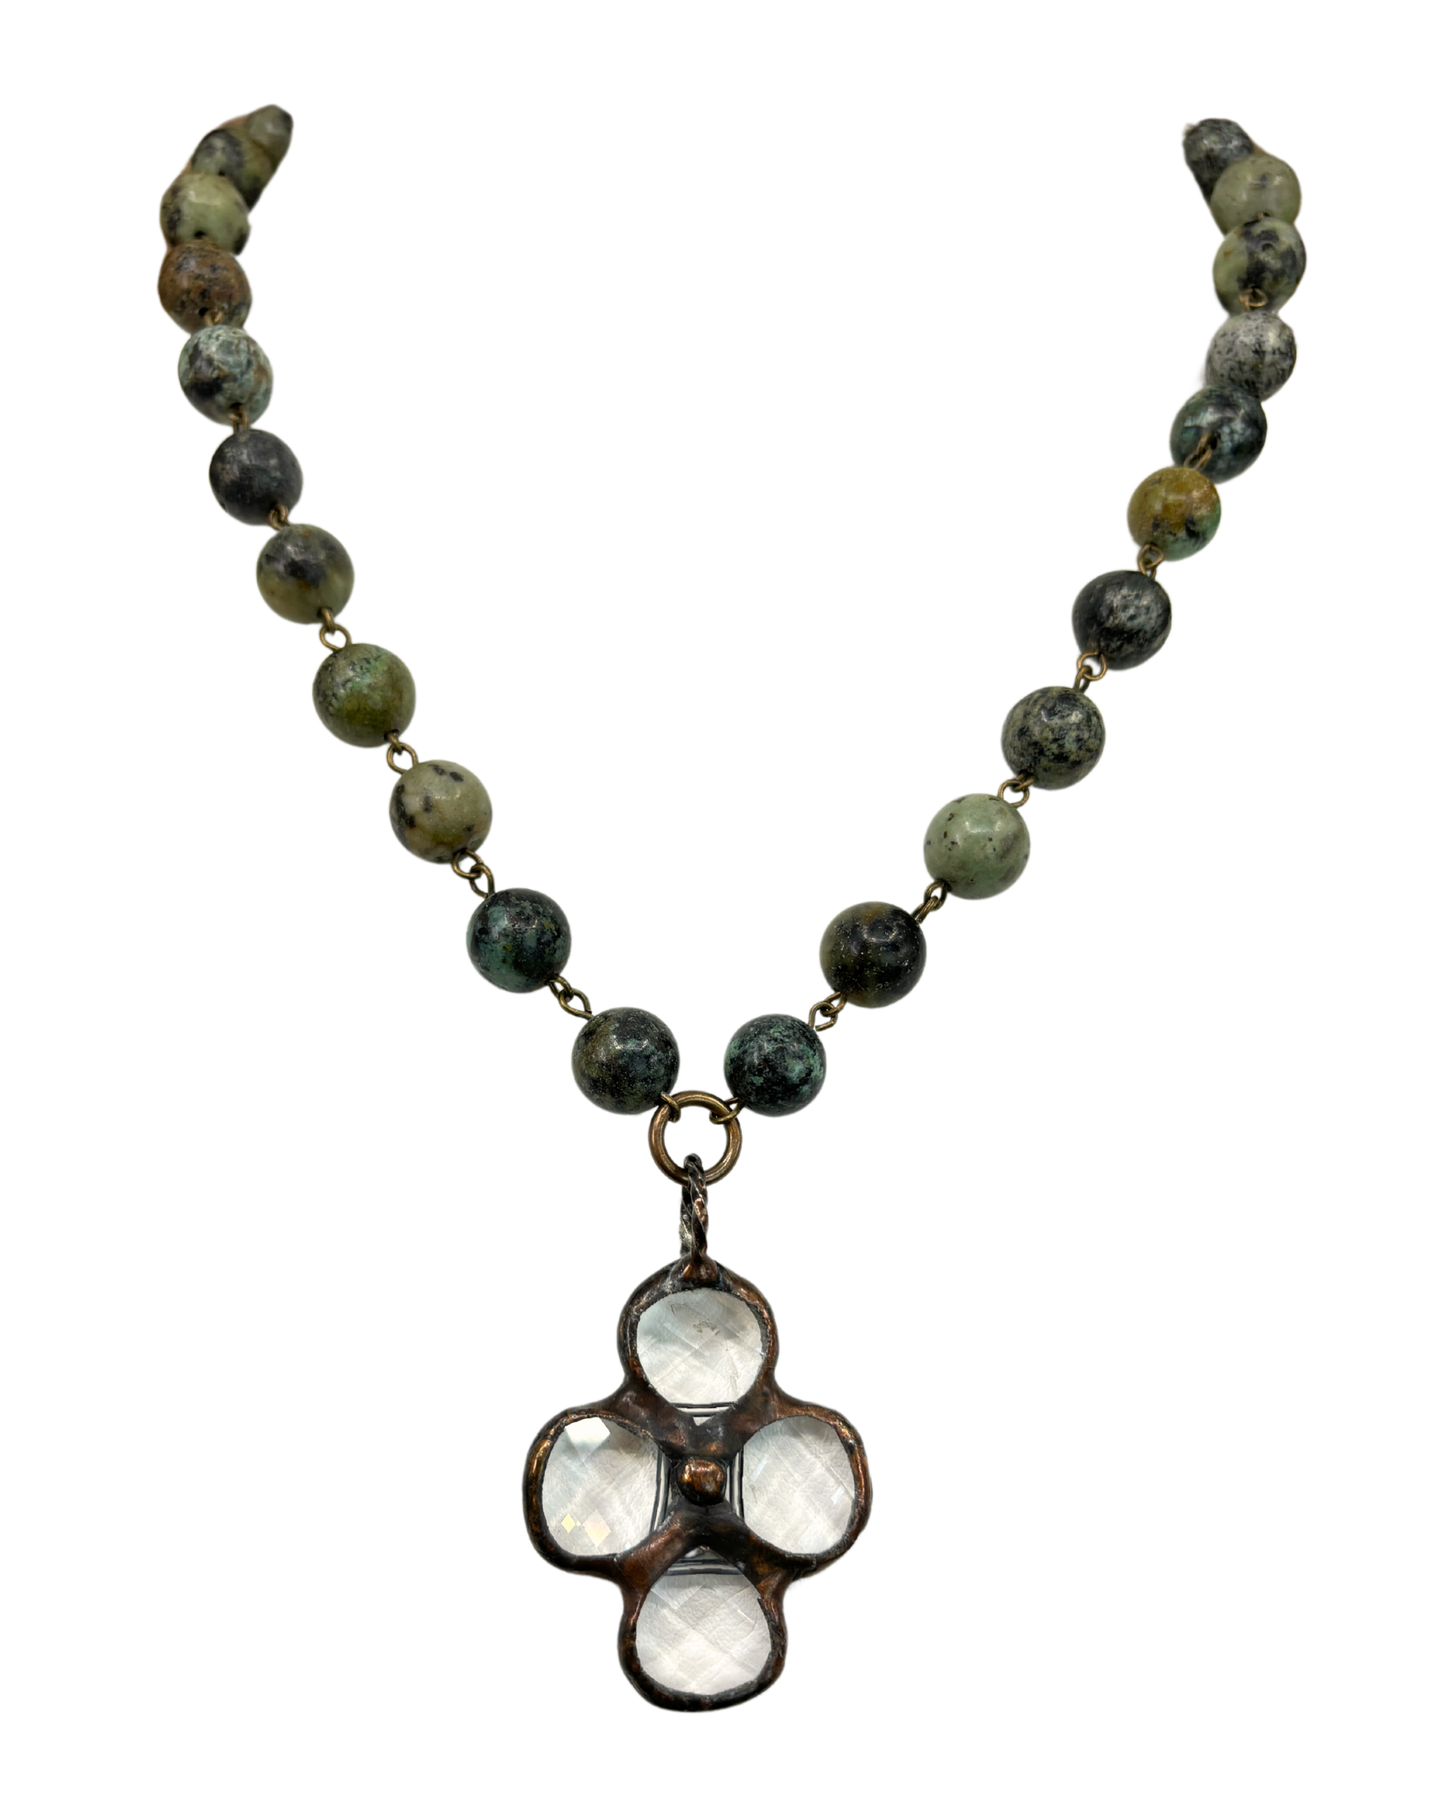 Vintage Crystal Soldered Pendant Necklace